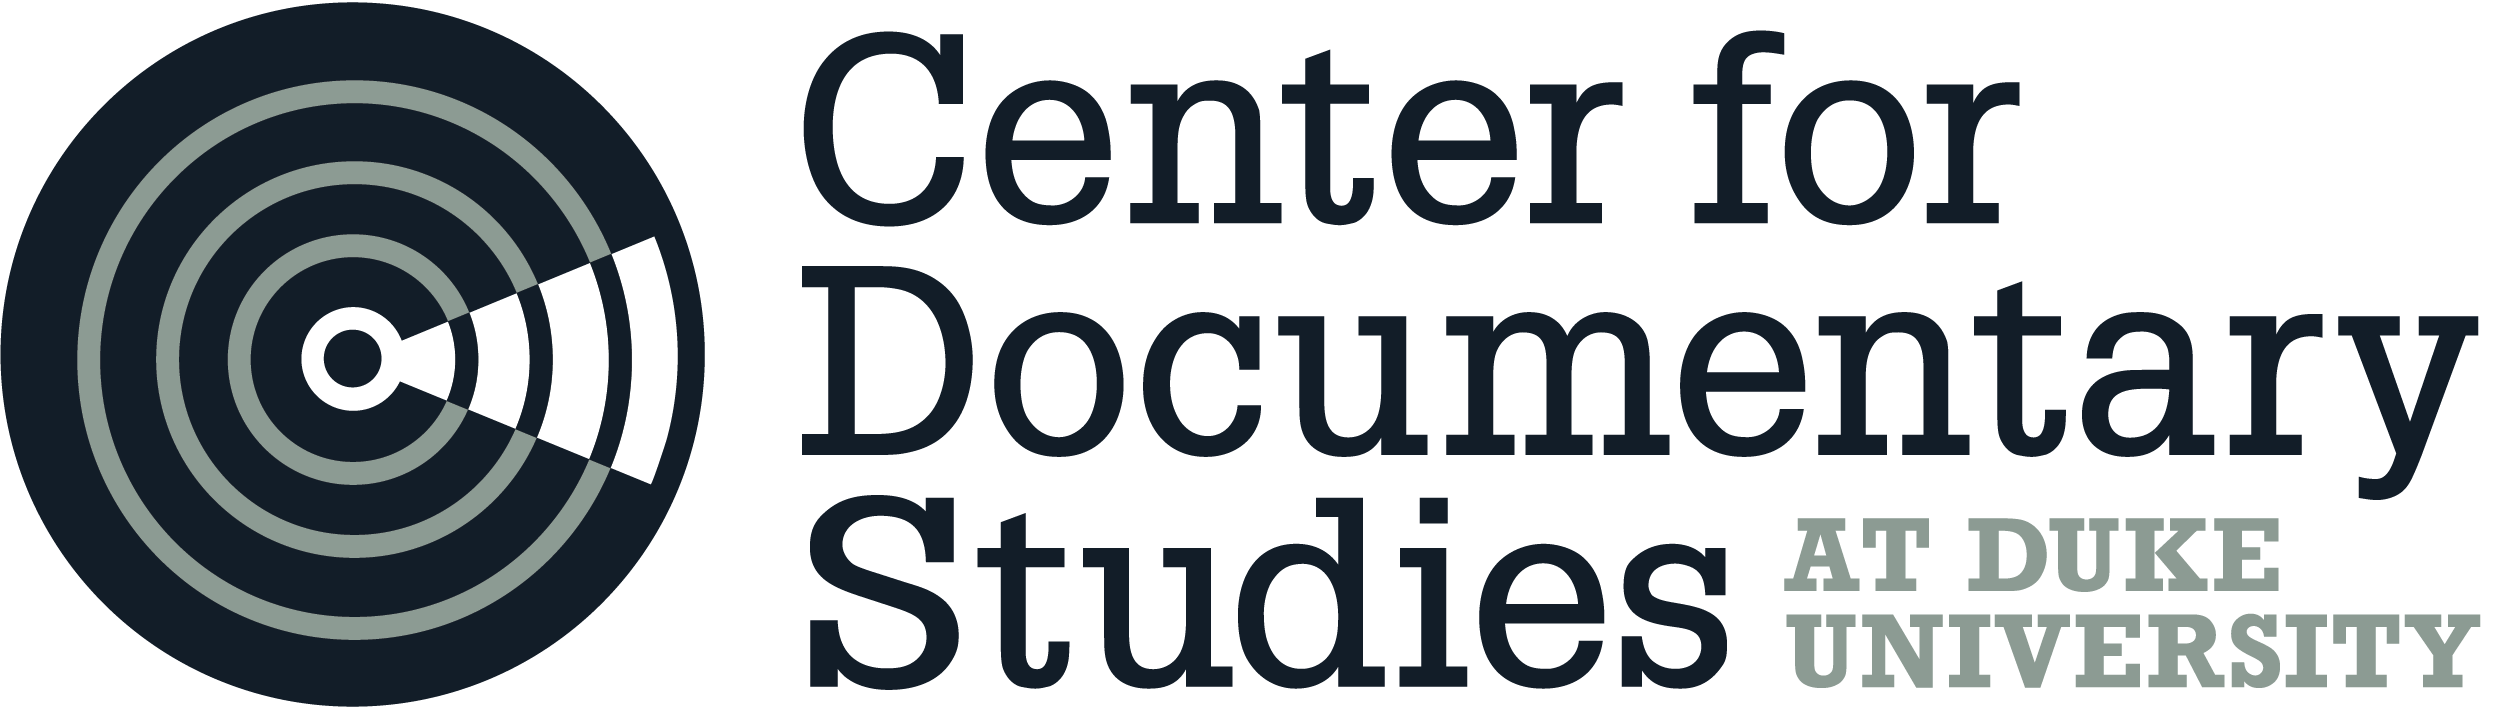 Center for Documentary Studies at Duke University